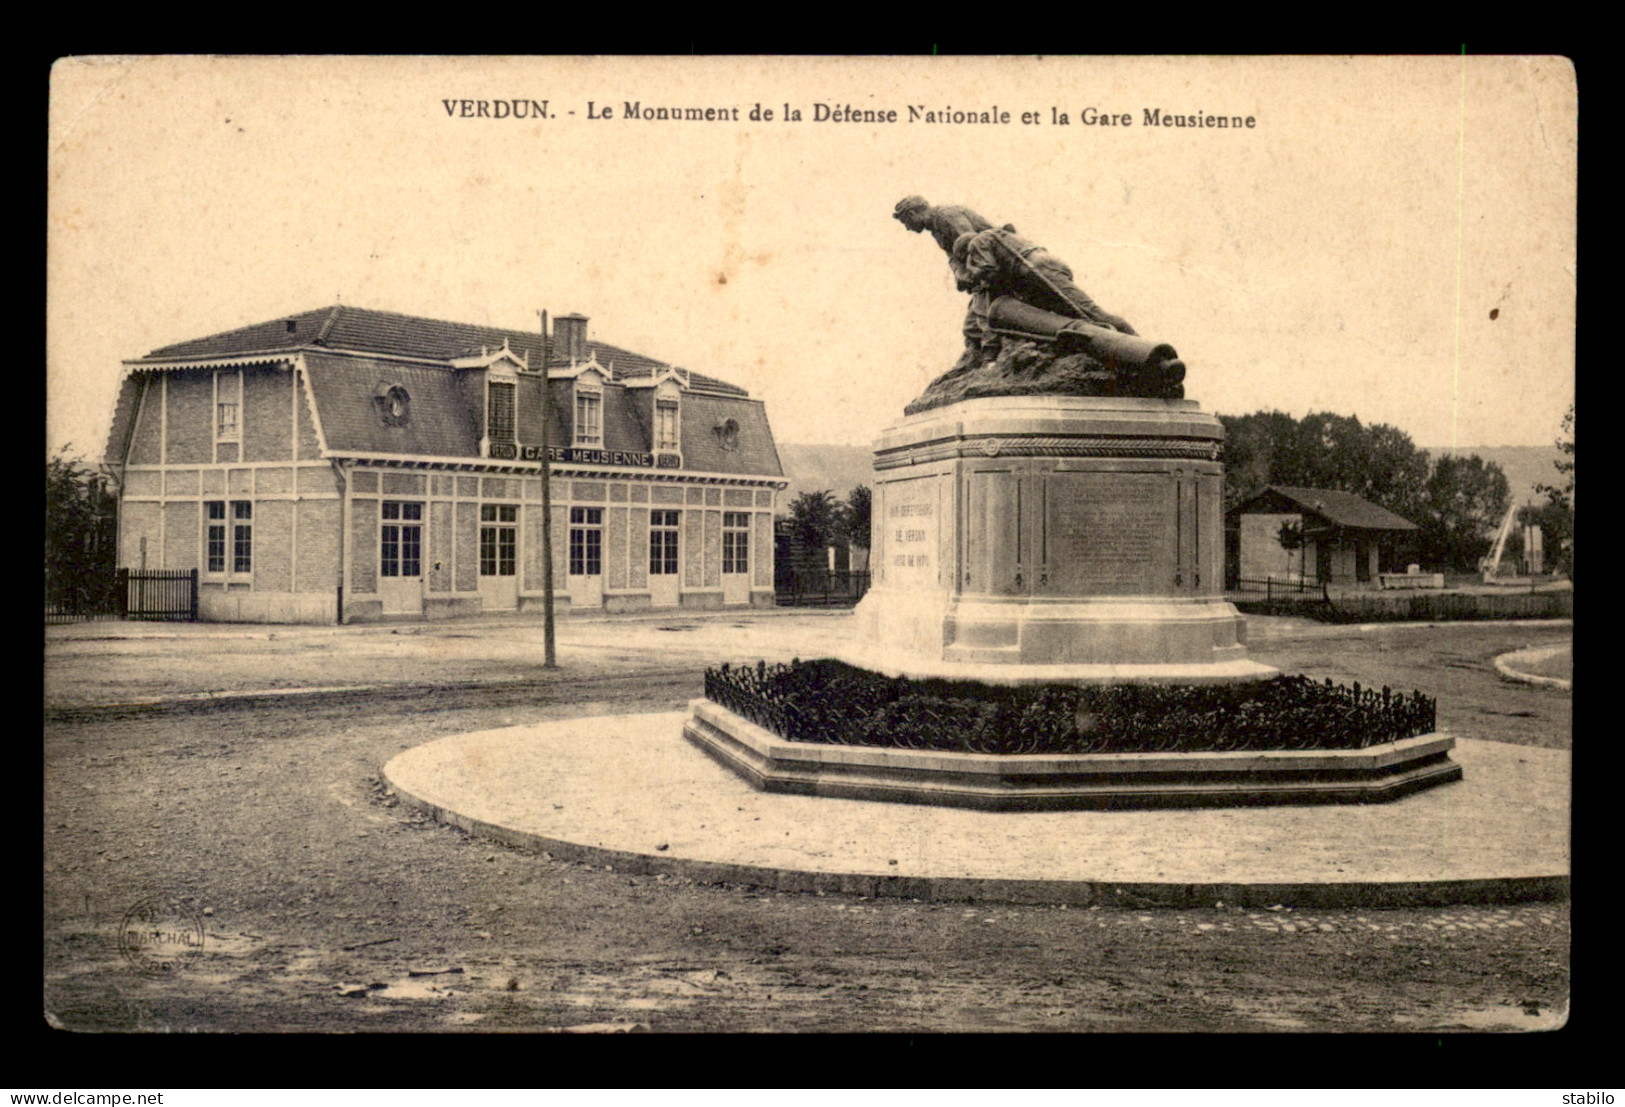 55 - VERDUN - MONUMENT DE LA DEFENSE NATIONALE ET LA GARE MEUSIENNE - GUERRE DE 1870 - EDITEUR MARCHAL - Verdun